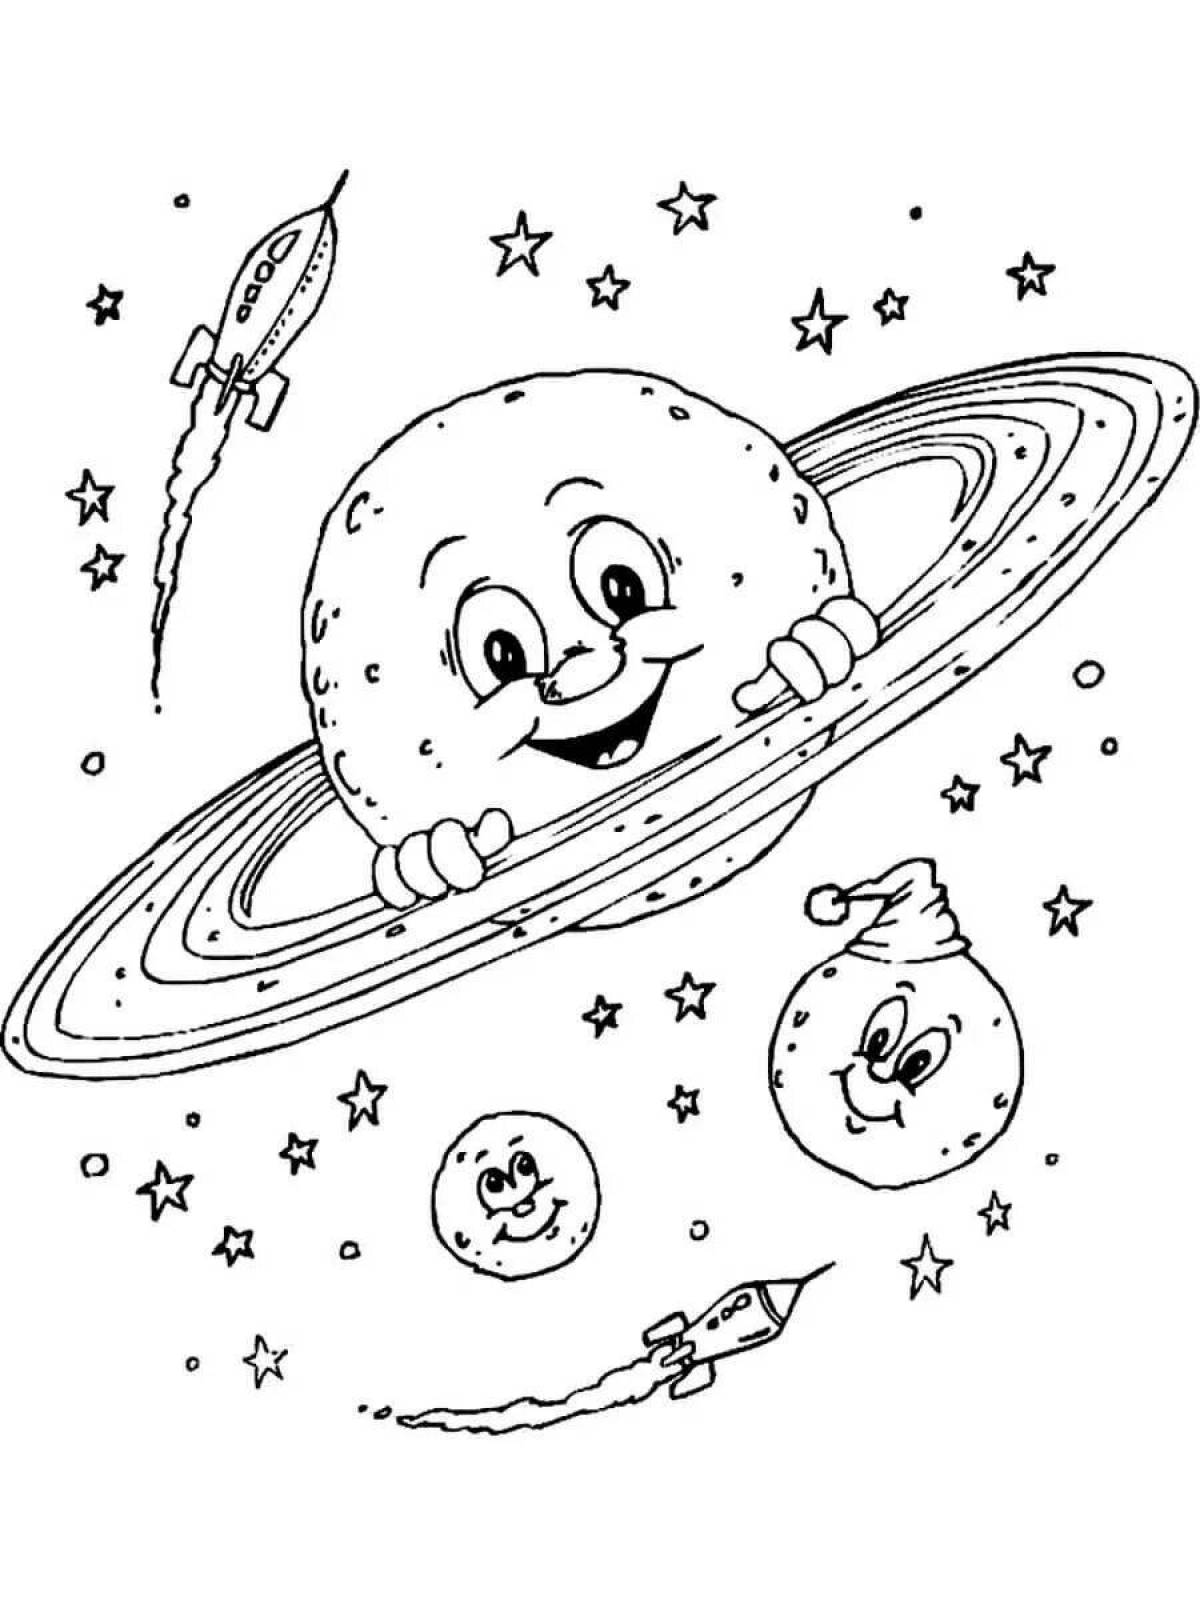 Раскраска про космос для детей 3 лет. Космос раскраска для детей. Раскраска. В космосе. Раскраска космос и планеты для детей. Раскраска на тему космос для детей.